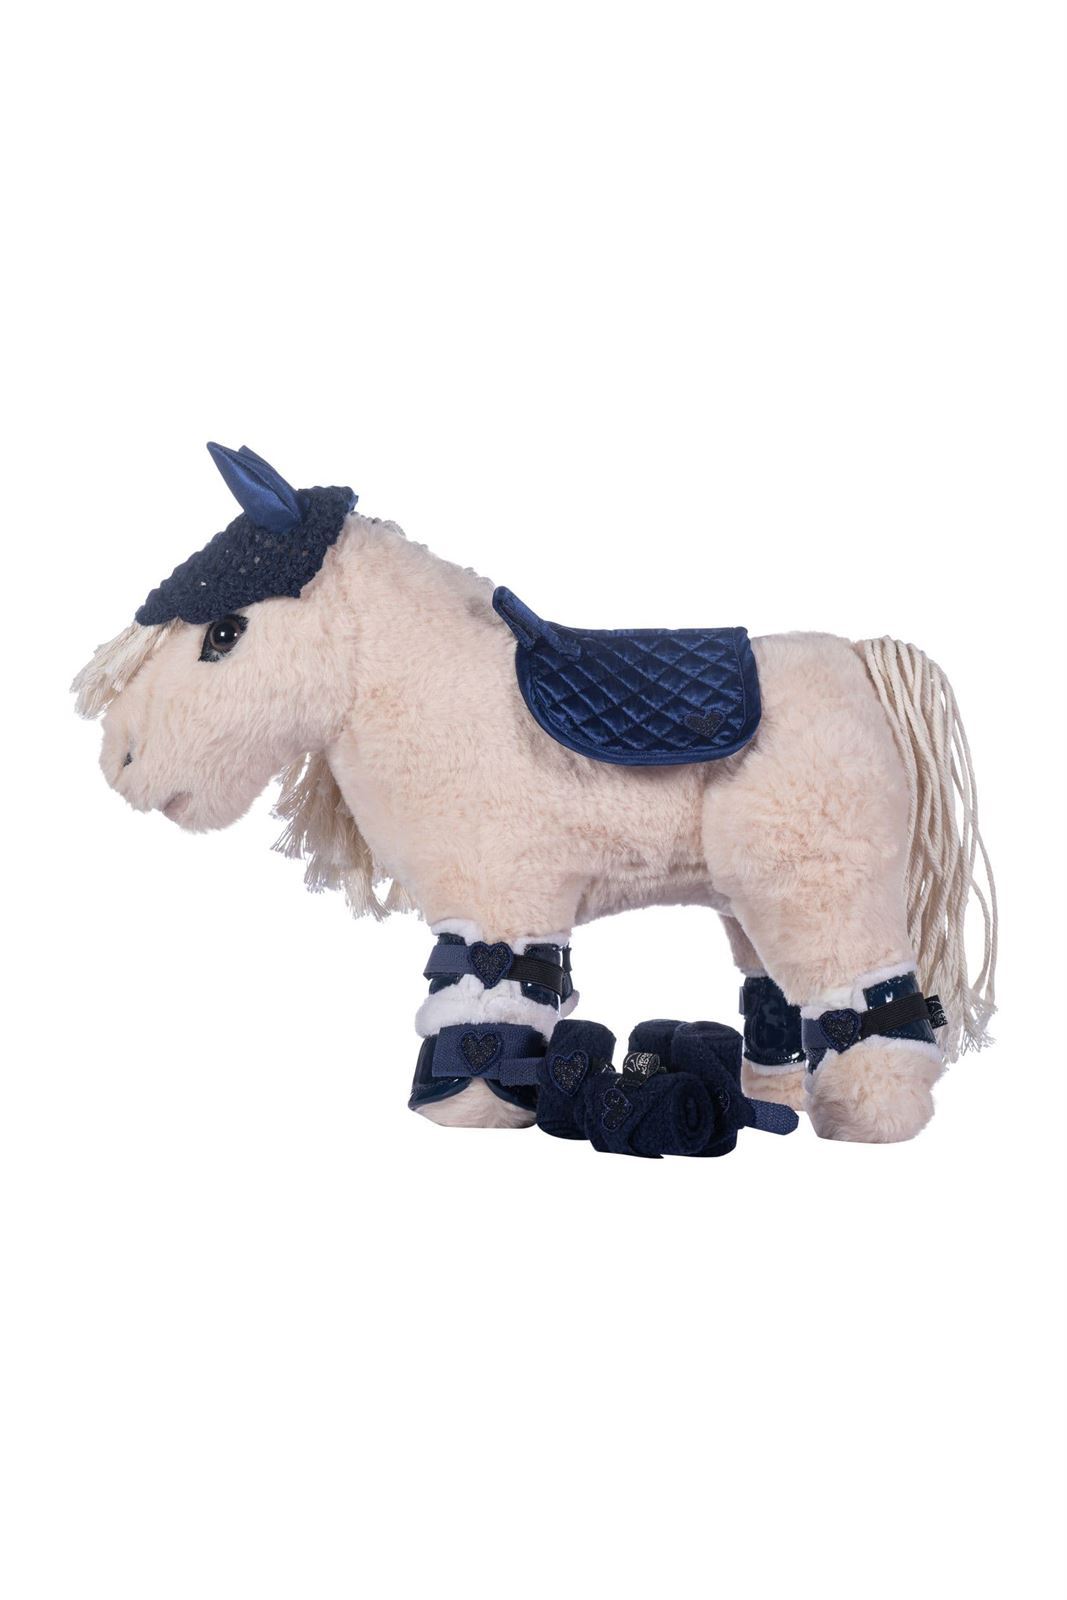 Set accesorios Cuddle pony HKM Sports Equipment Mantilla, orejeras, vendas, protectores y campanas color azul marino - Imagen 2